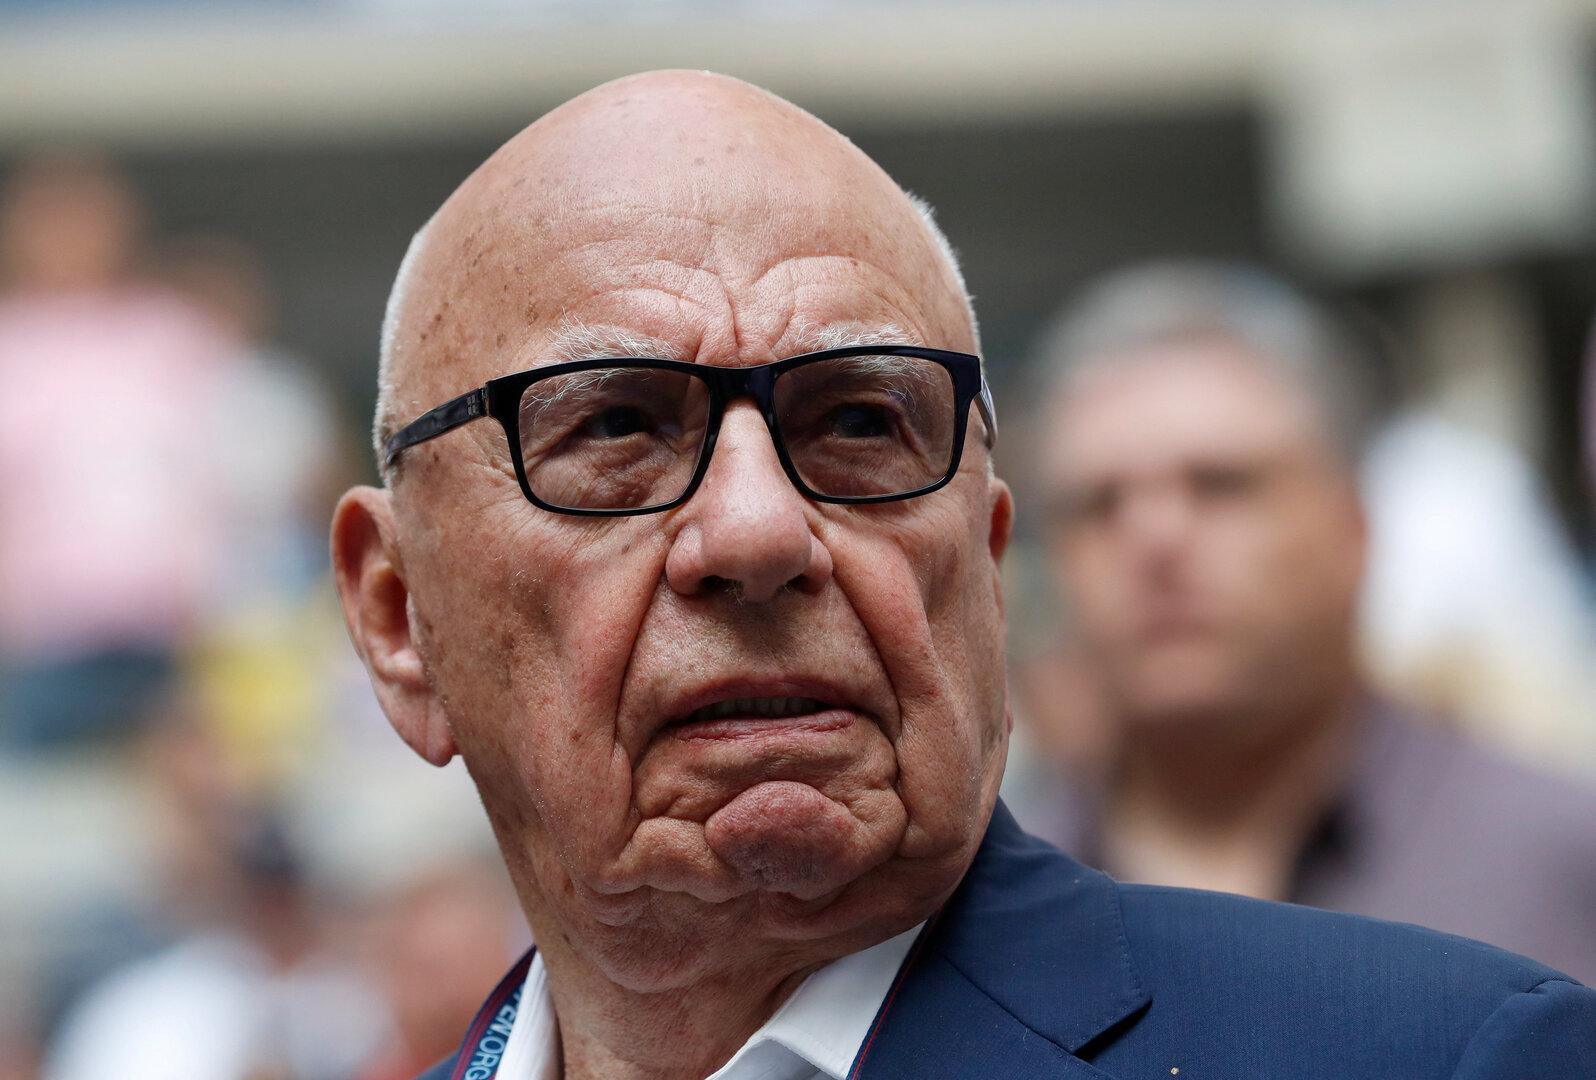 Medienmogul Murdoch kündigte mit 92 Jahren fünfte Hochzeit an